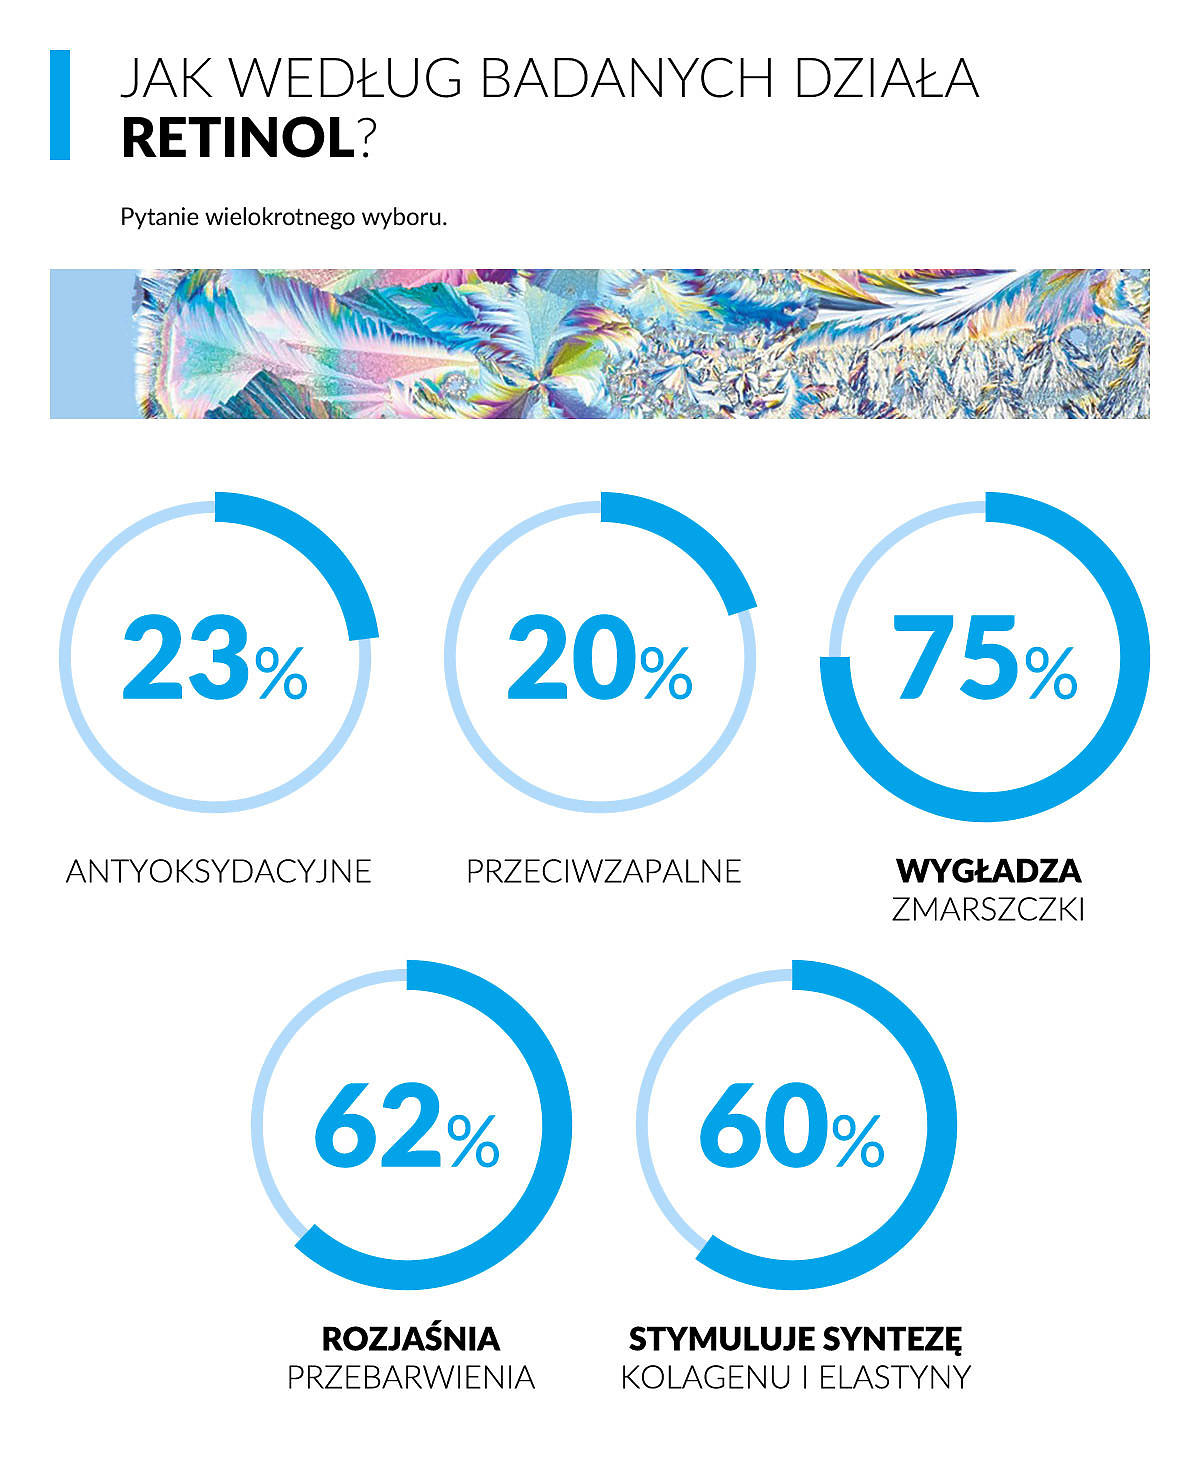 Jak według badanych działa retinol - wyniki badania Wizaz.pl i La Roche Posay